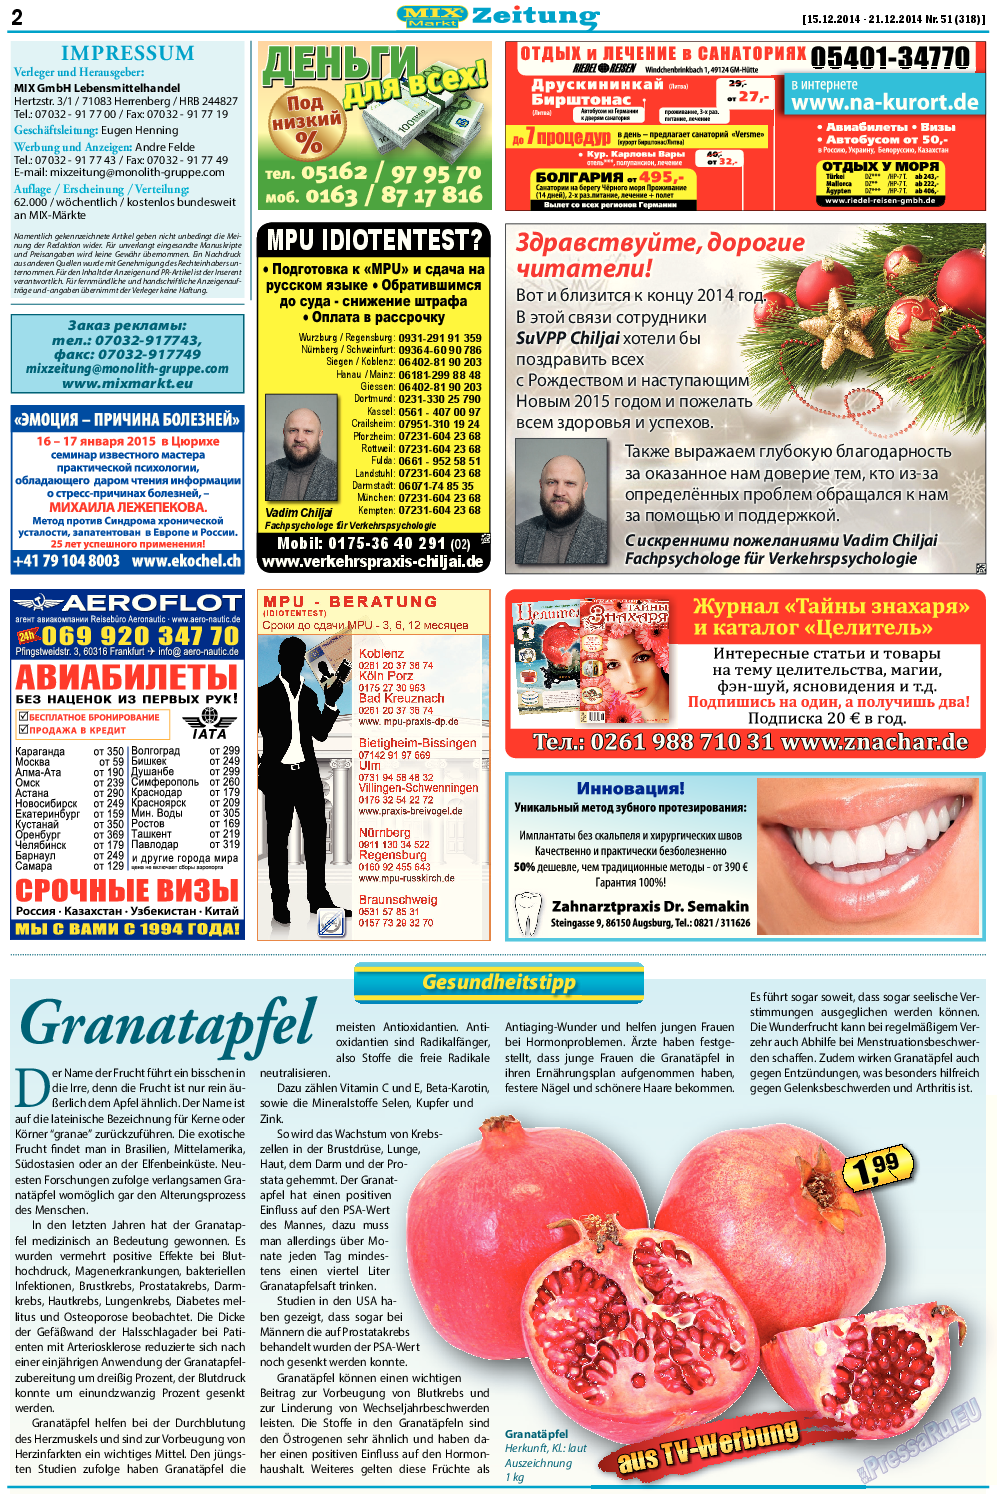 MIX-Markt Zeitung (газета). 2014 год, номер 51, стр. 2